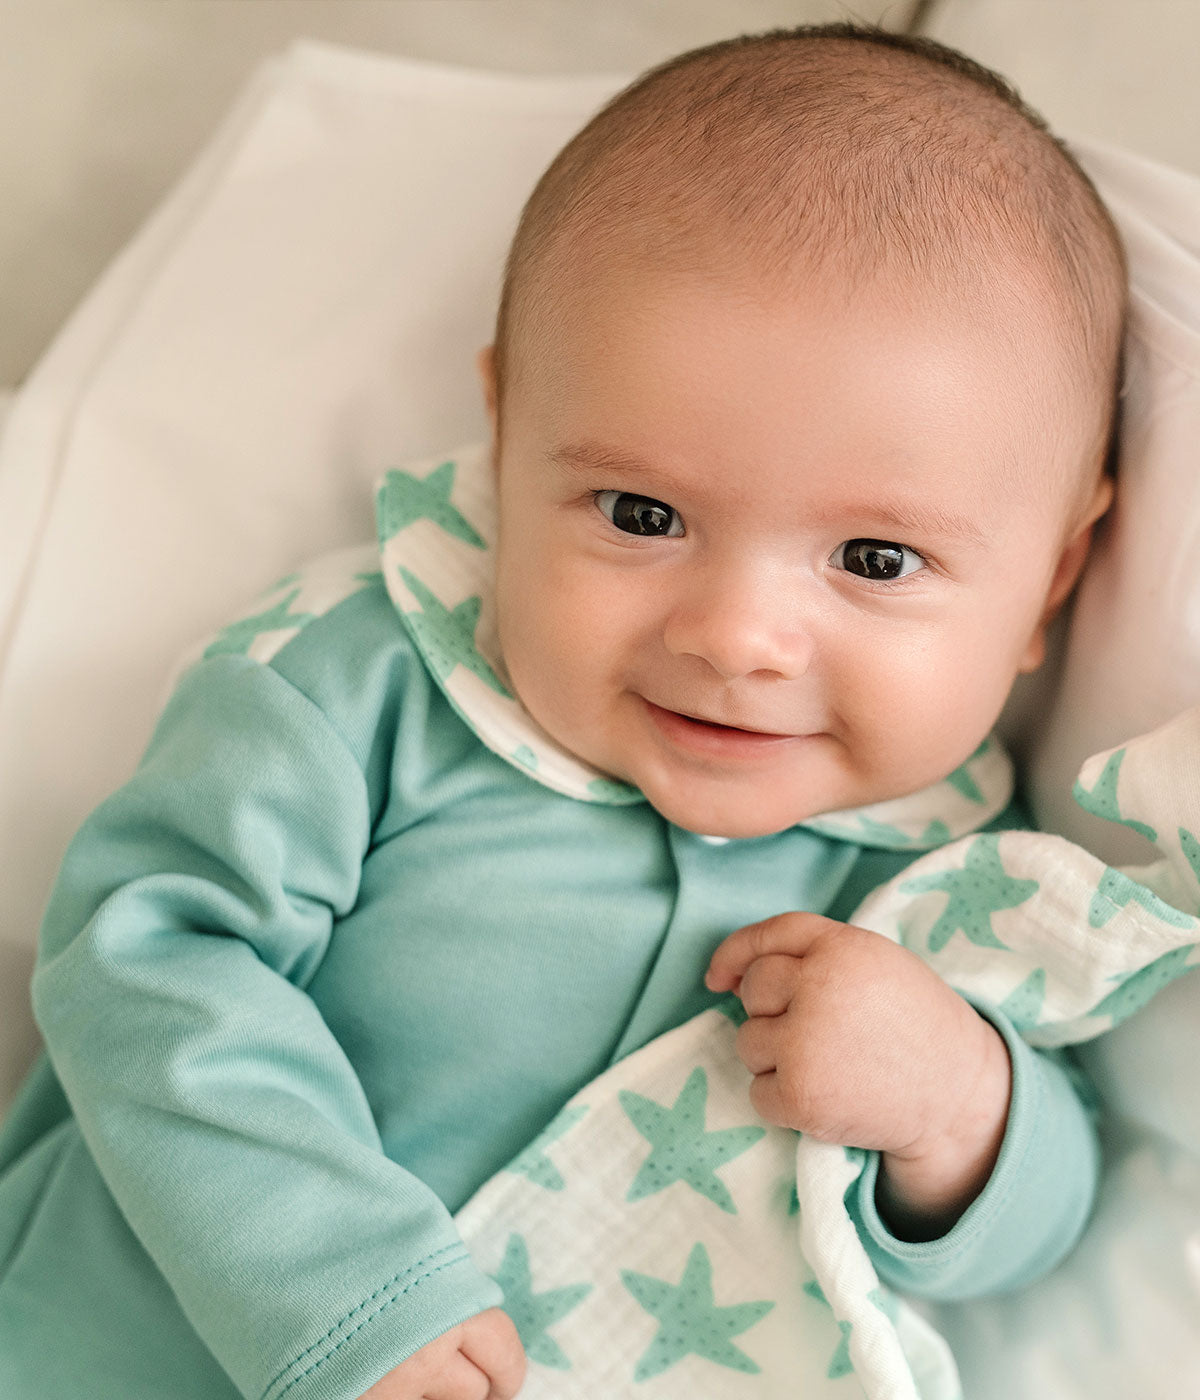 Babygrow em Algodão para Bebé Estrelas - Verde